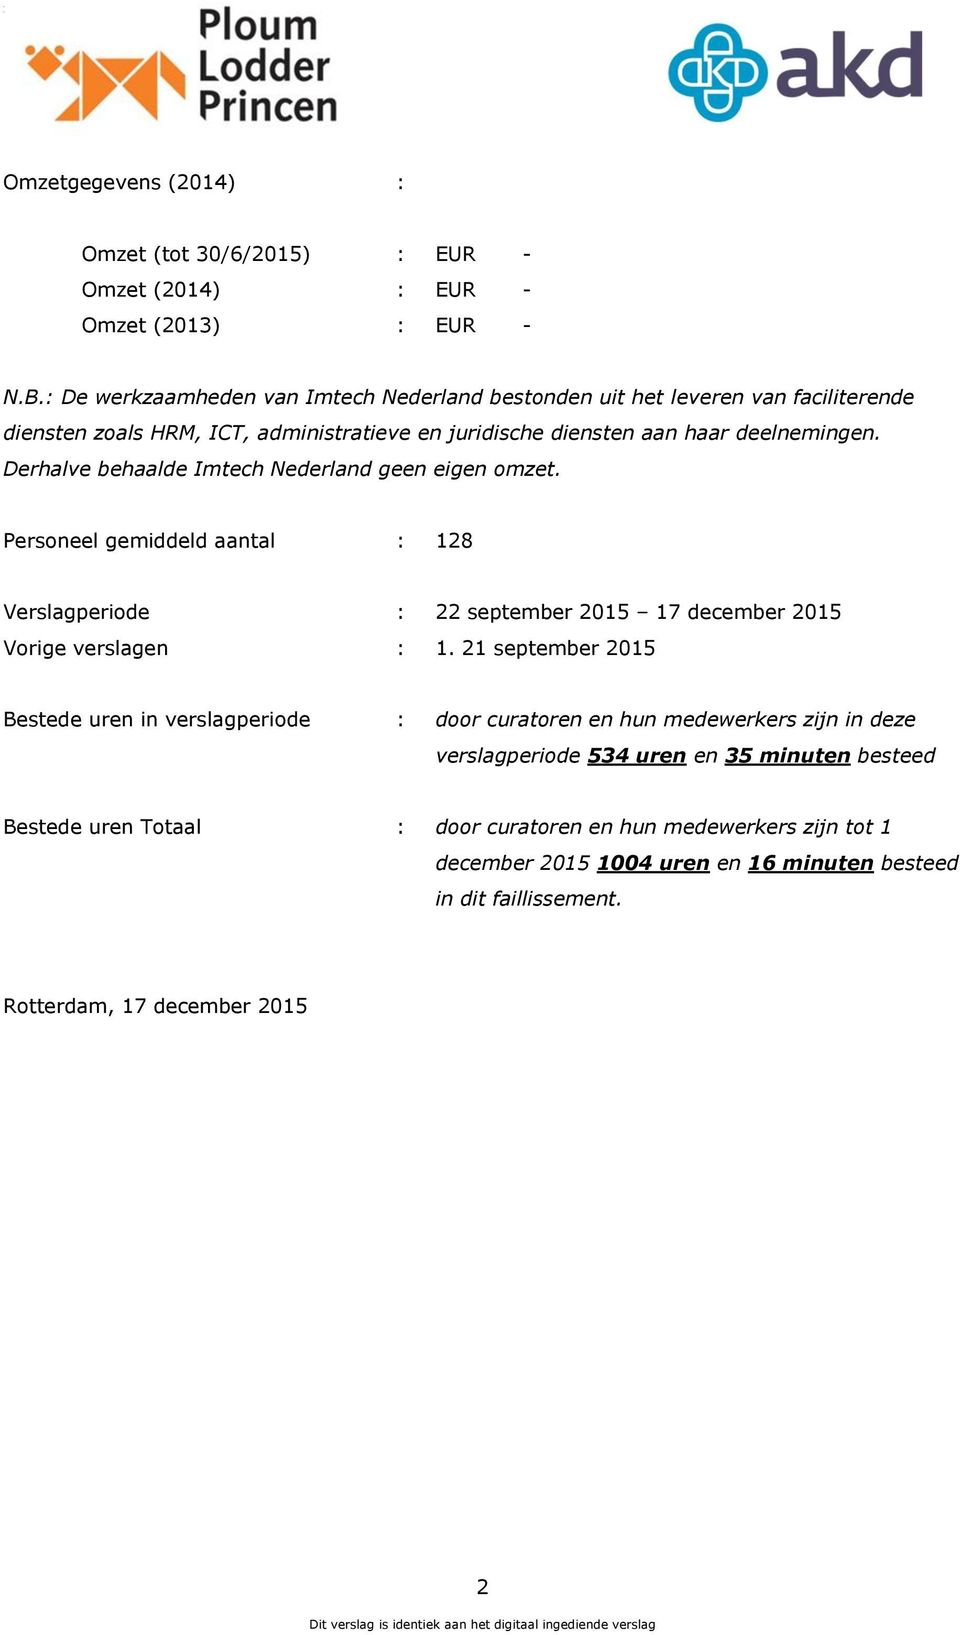 Derhalve behaalde Imtech Nederland geen eigen omzet. Personeel gemiddeld aantal : 128 Verslagperiode : 22 september 2015 17 december 2015 Vorige verslagen : 1.